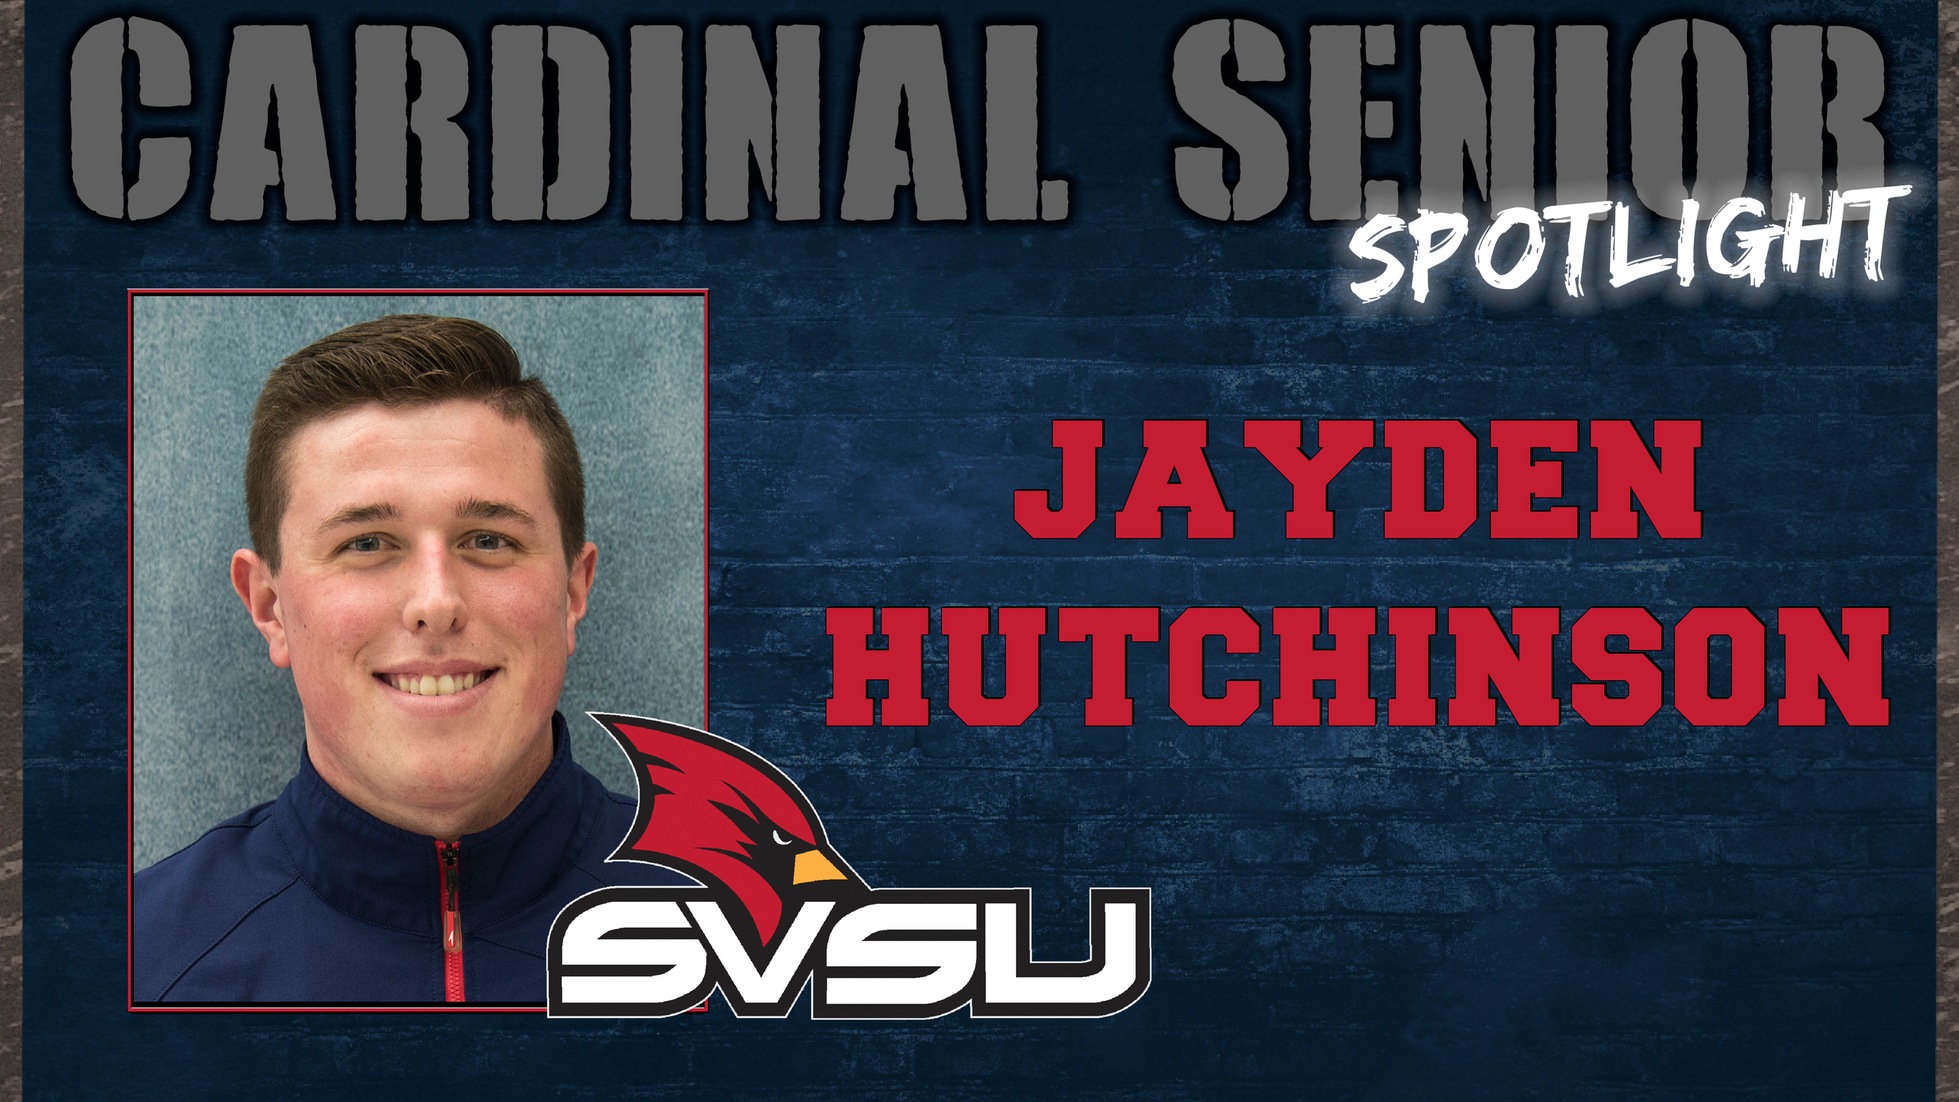 SVSU Cardinal Senior Spotlight - Jayden Hutchinson